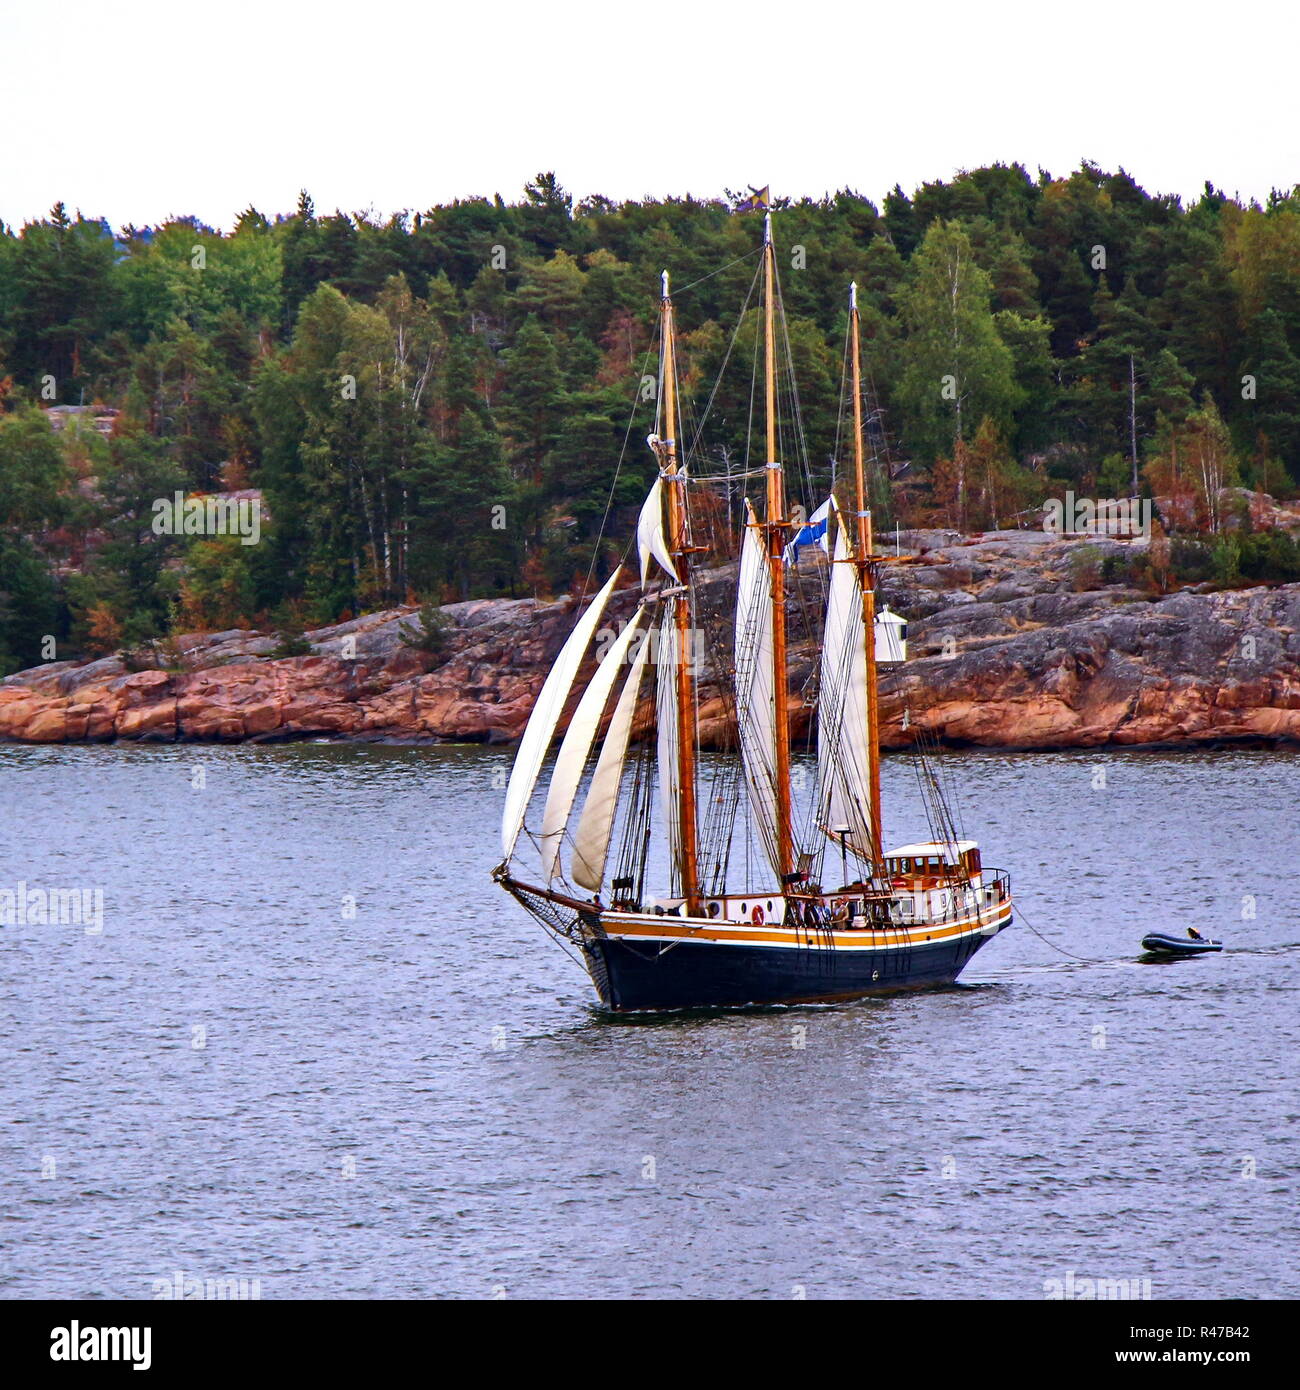 Segelschiff. Foto im Vintage bild Stil Stockfoto